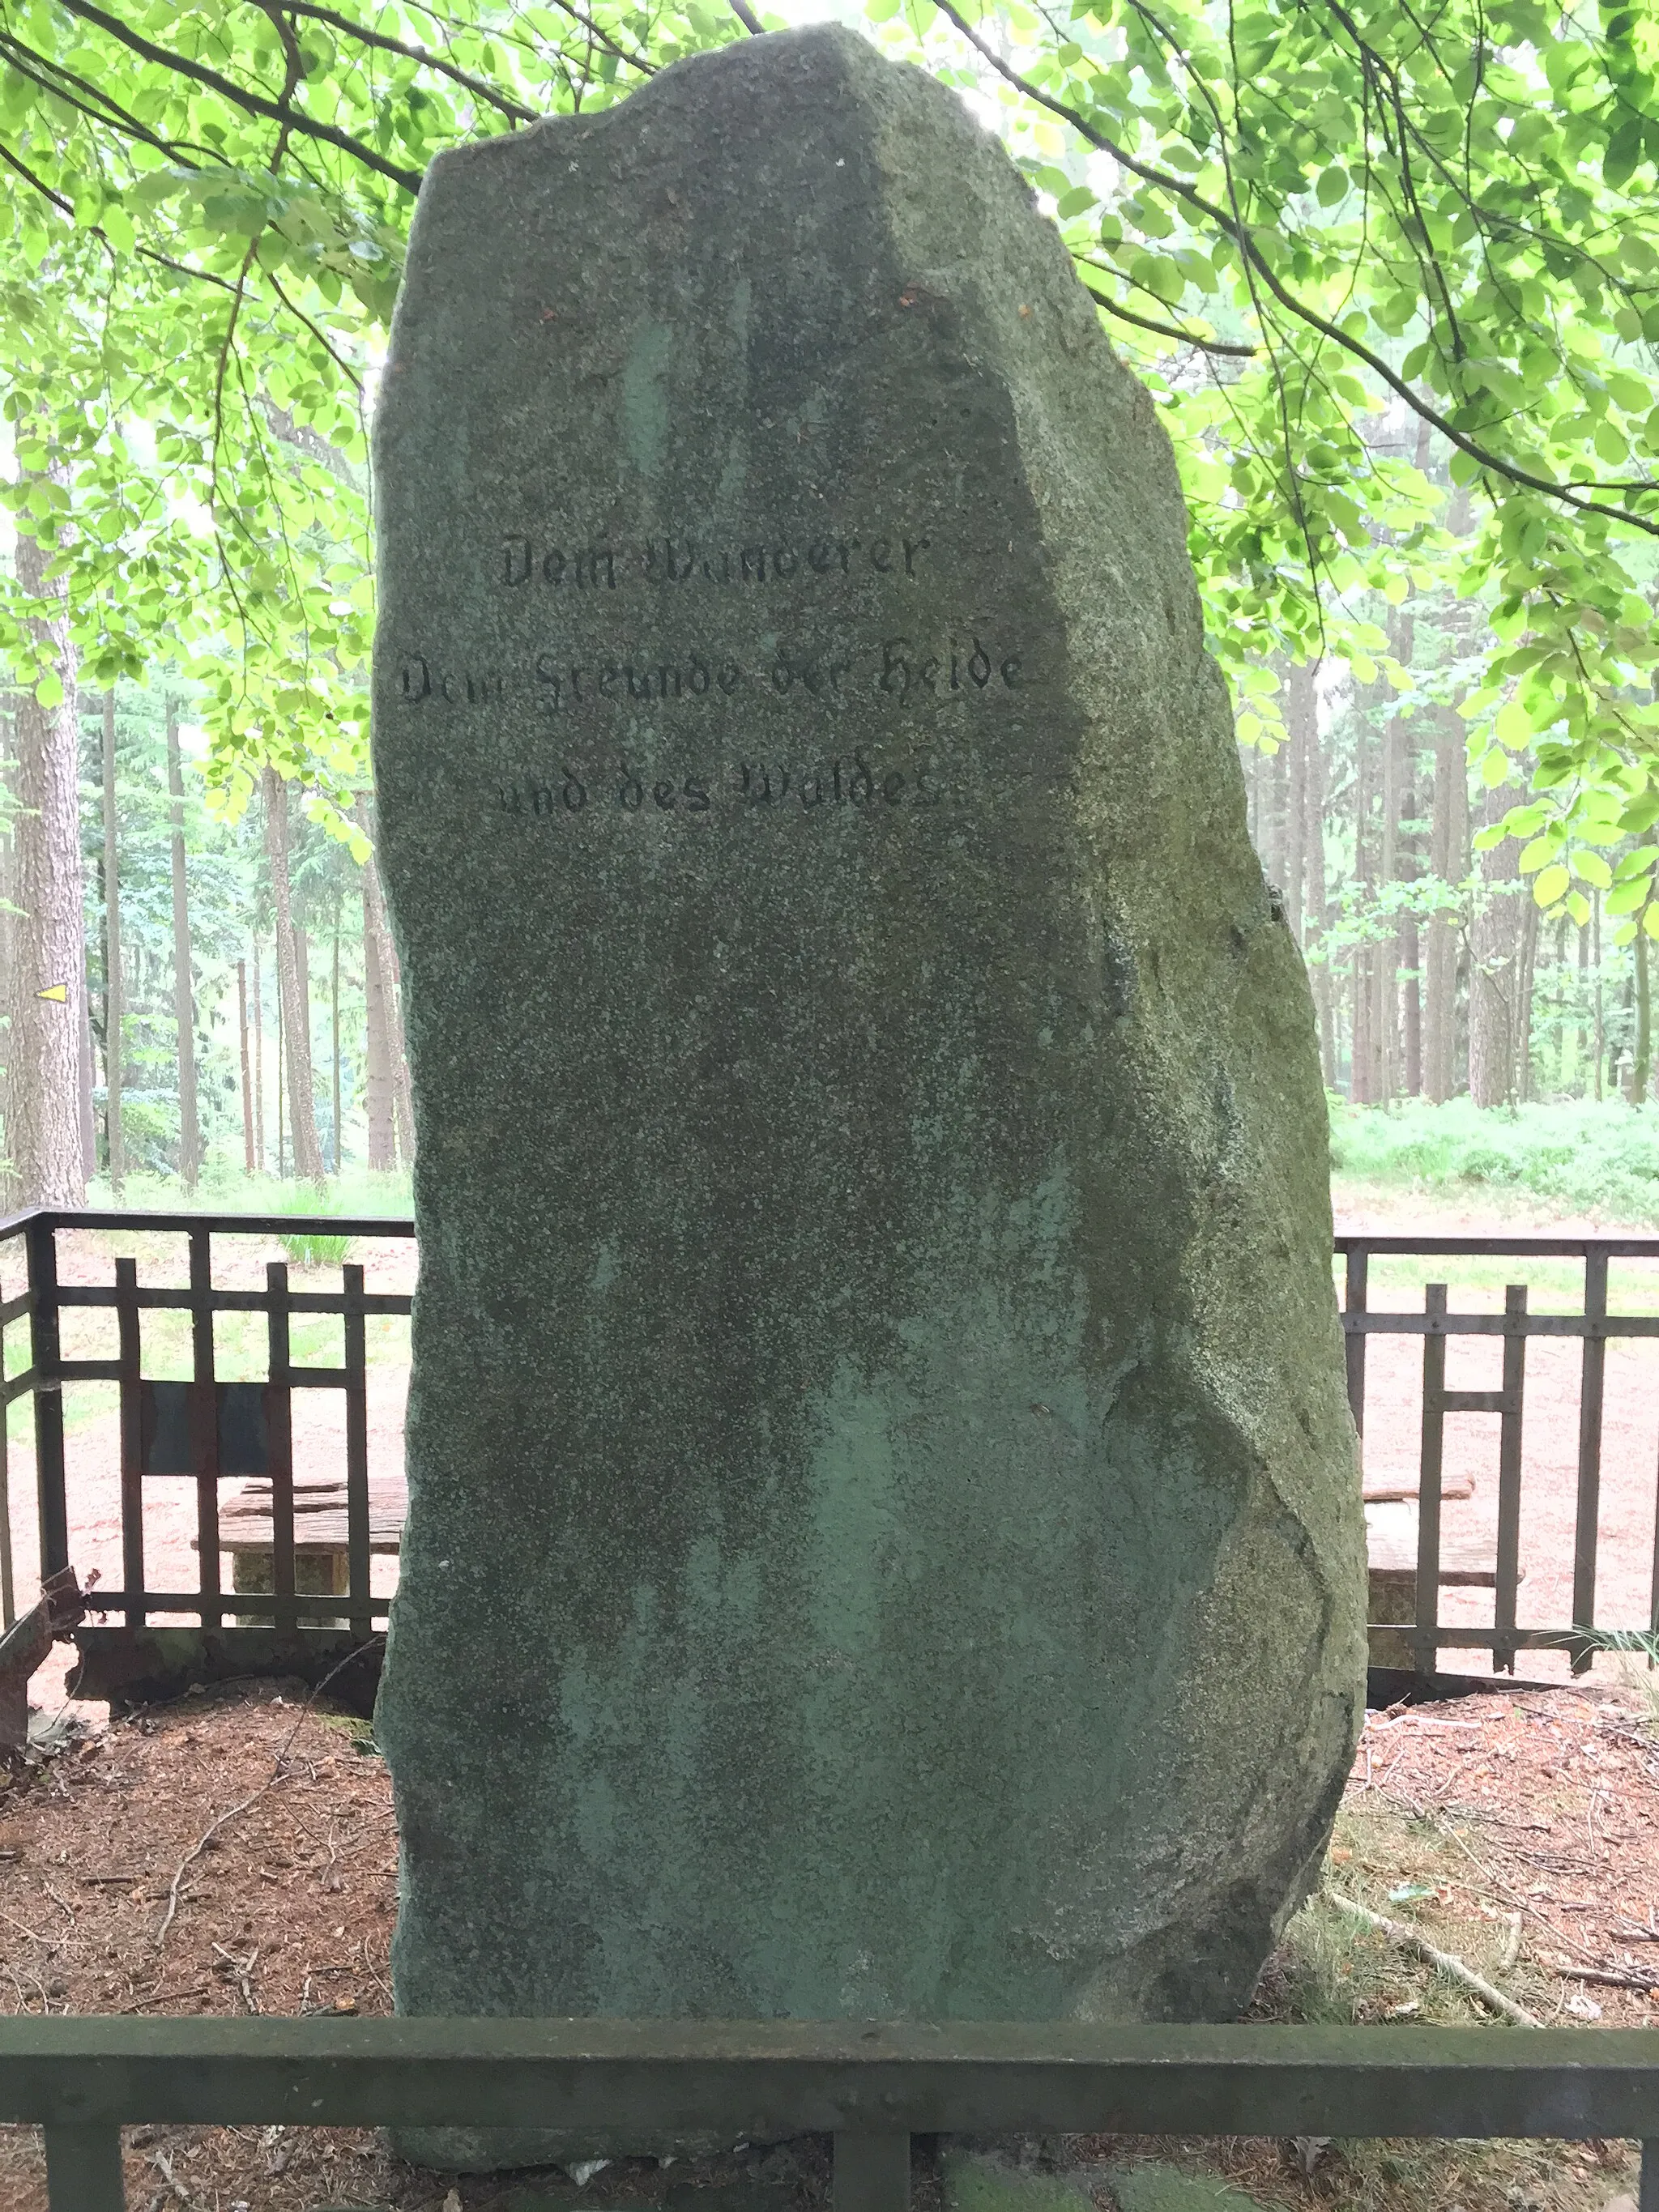 Photo showing: Back, inscribed "Dem Wanderer, Dem Freunde der Heide und des Waldes"